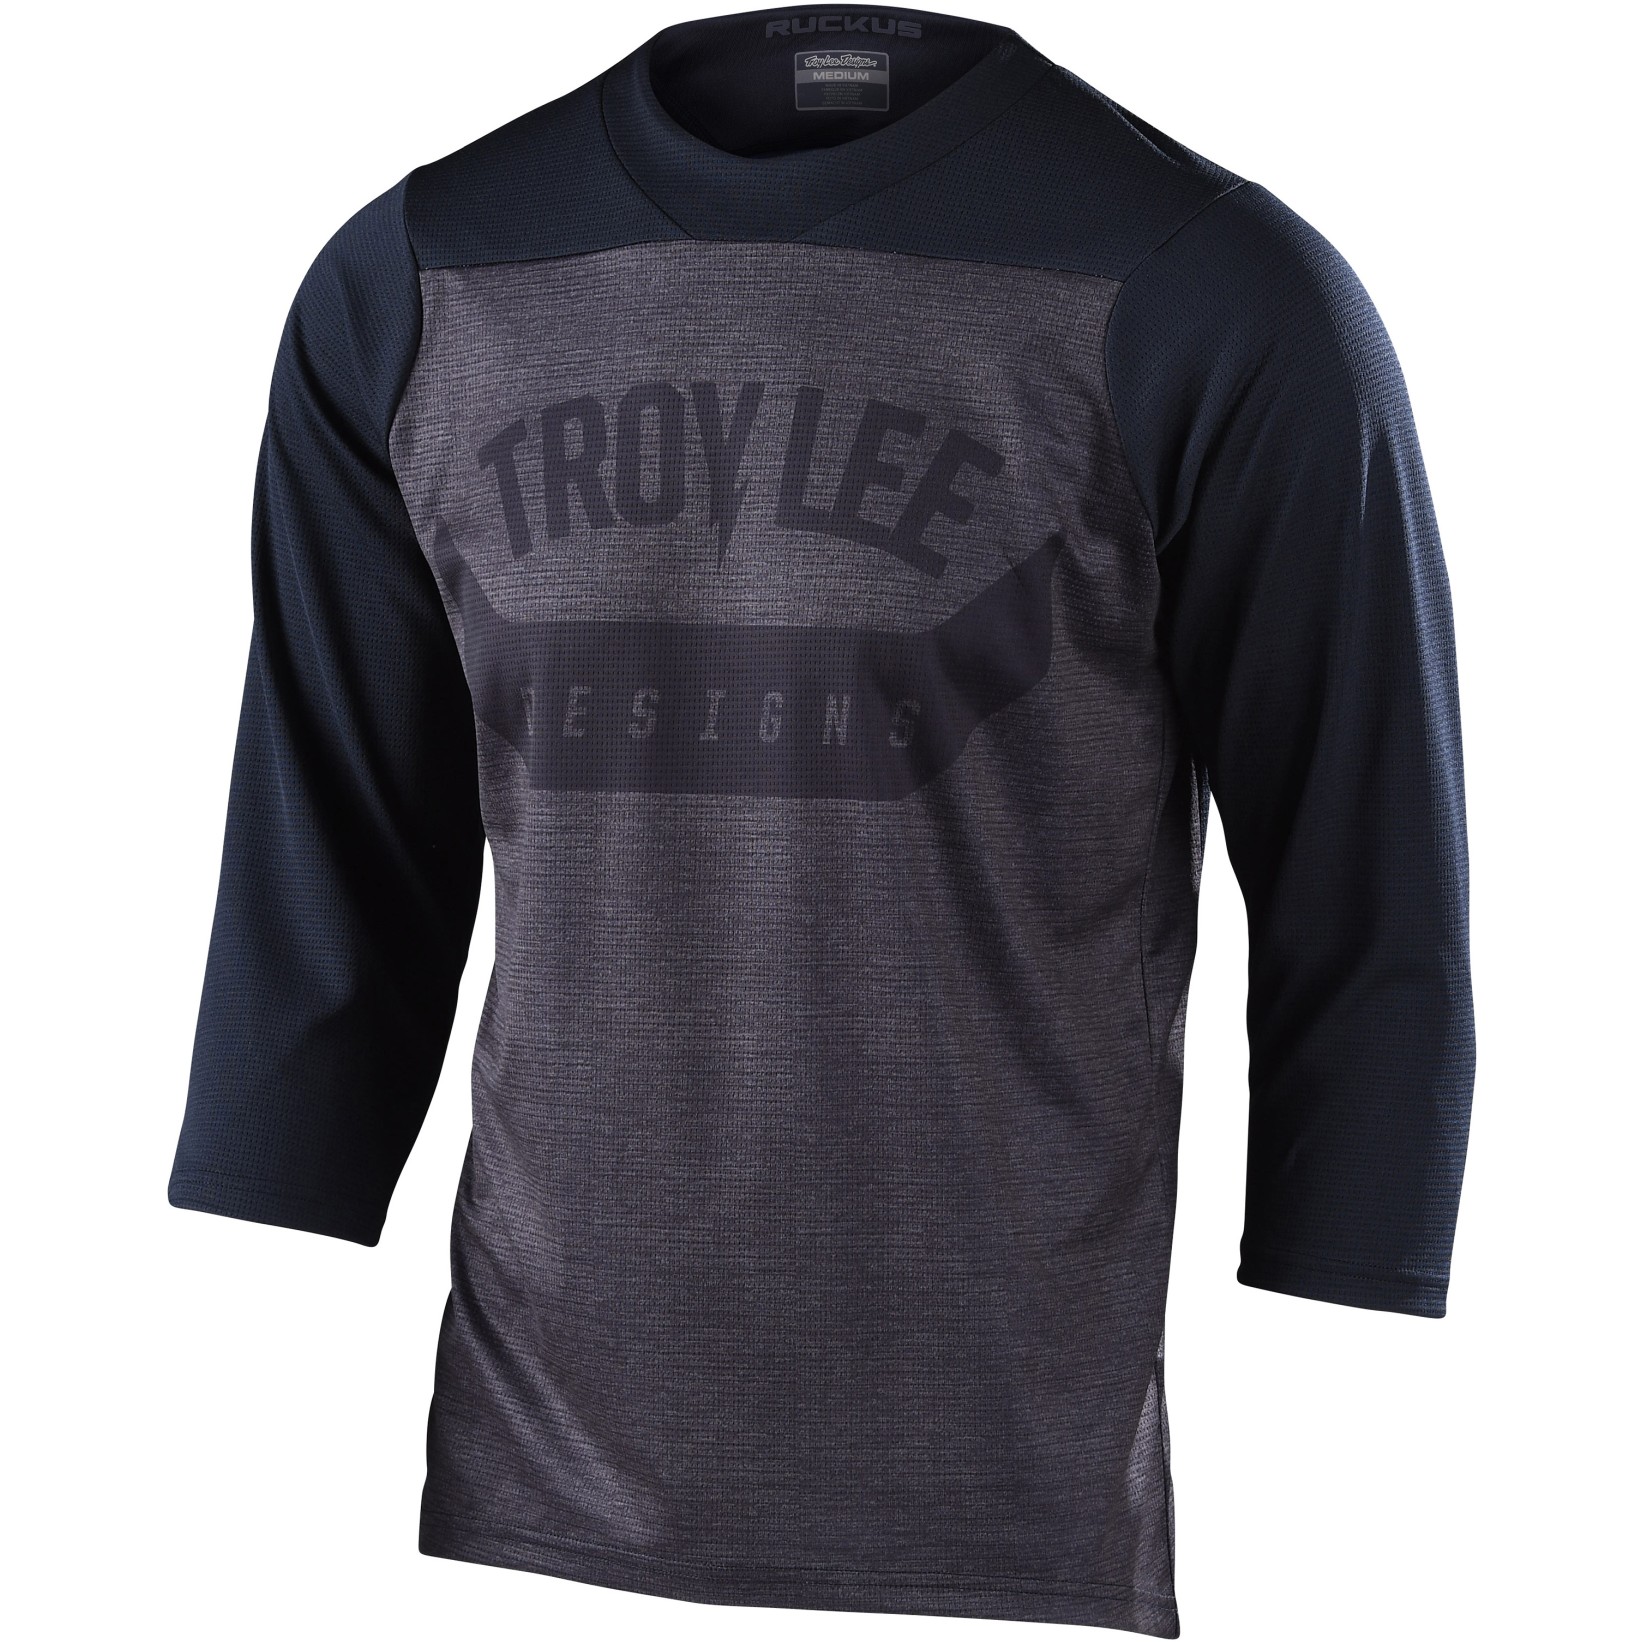 Productfoto van Troy Lee Designs Ruckus Shirt met 3/4-Mouwen - Arc Black